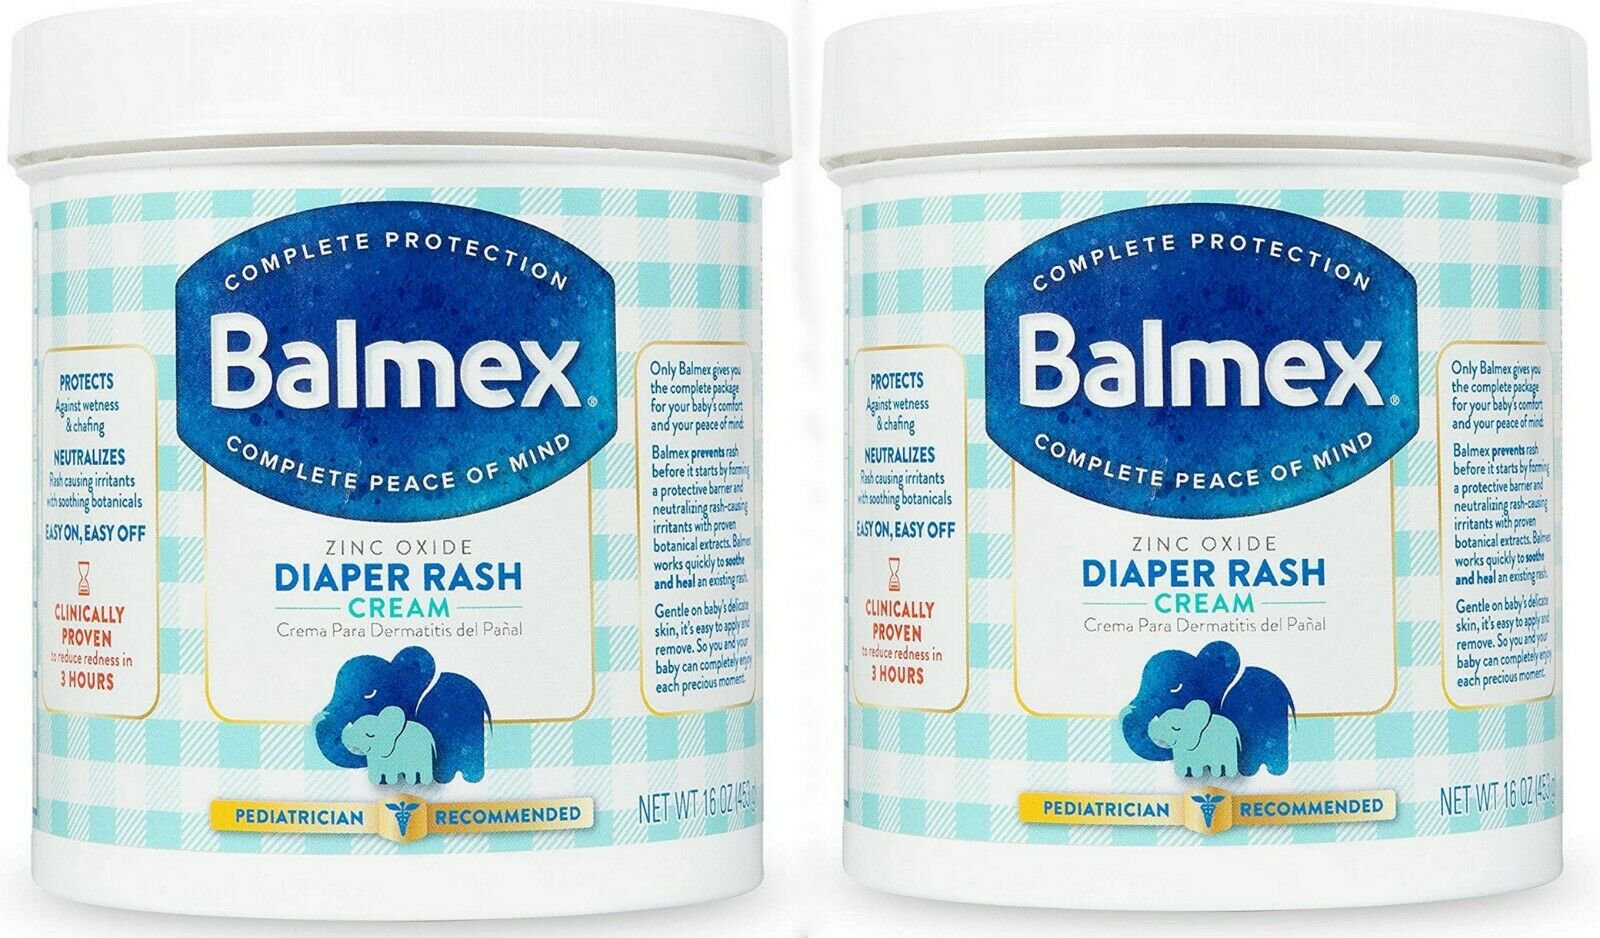 Thuốc Balmex: Công dụng, chỉ định và lưu ý khi dùng